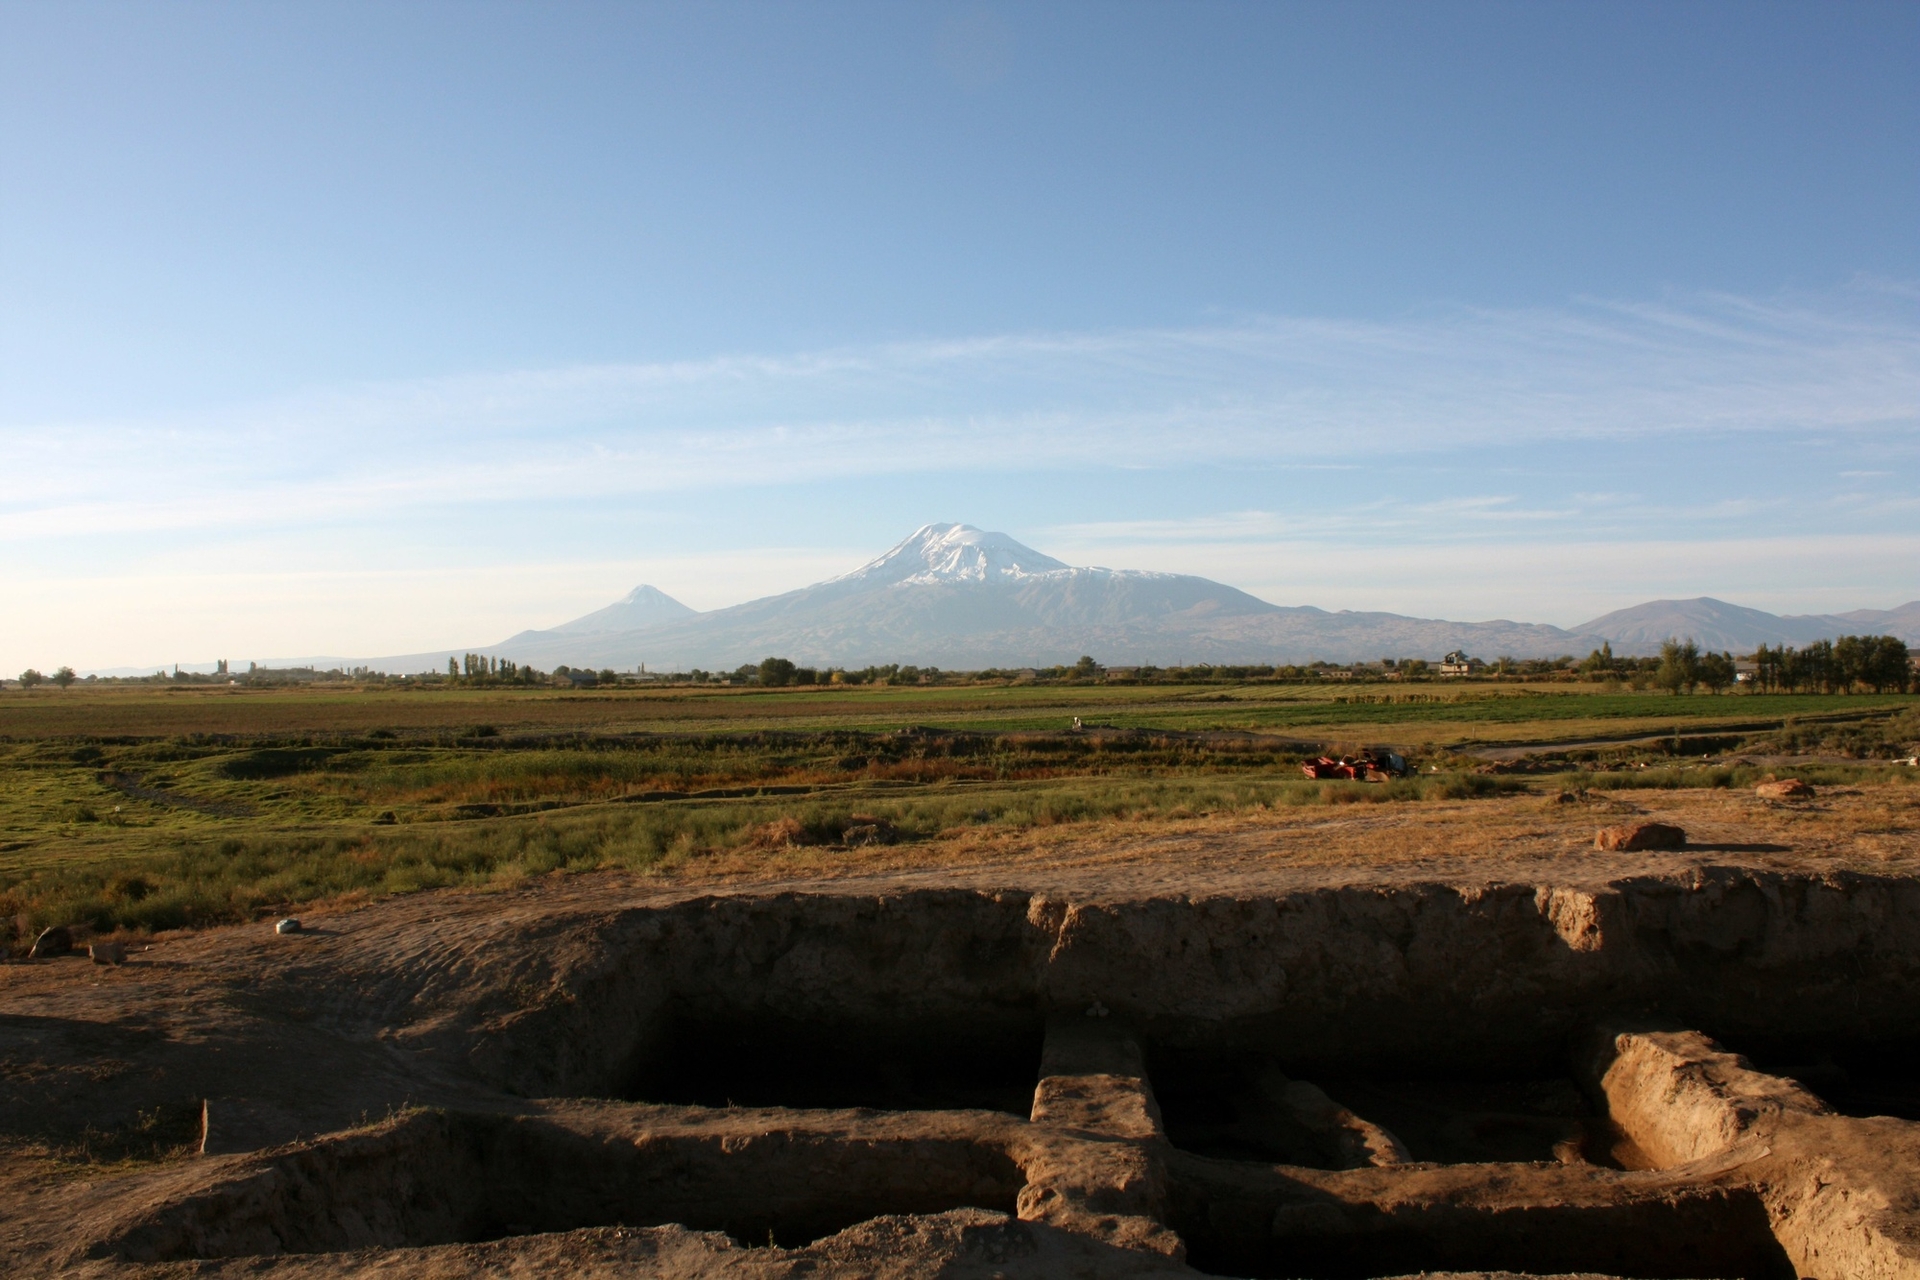 Vue sur l’Ararat depuis le site d’Aknashen. © Mission Archéologie Caucase